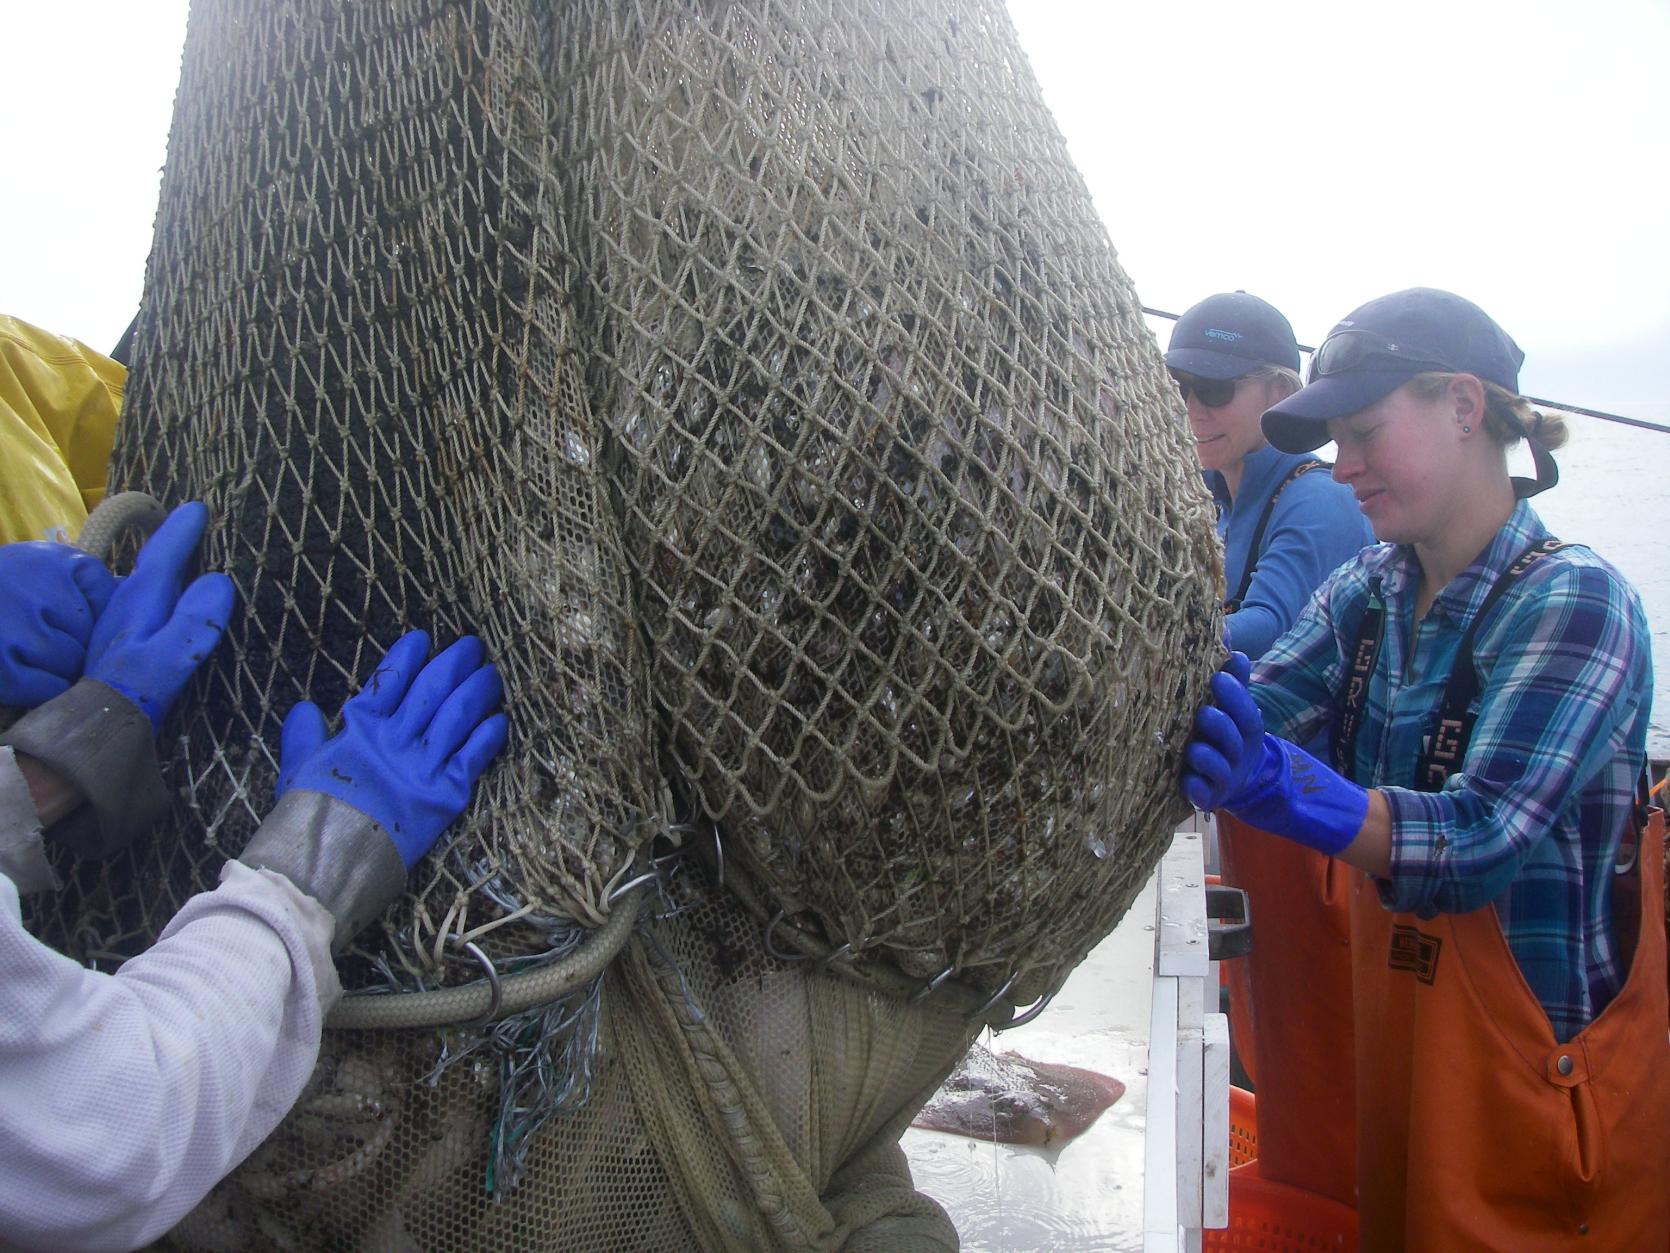 DMF staff bringing the trawl net onboard